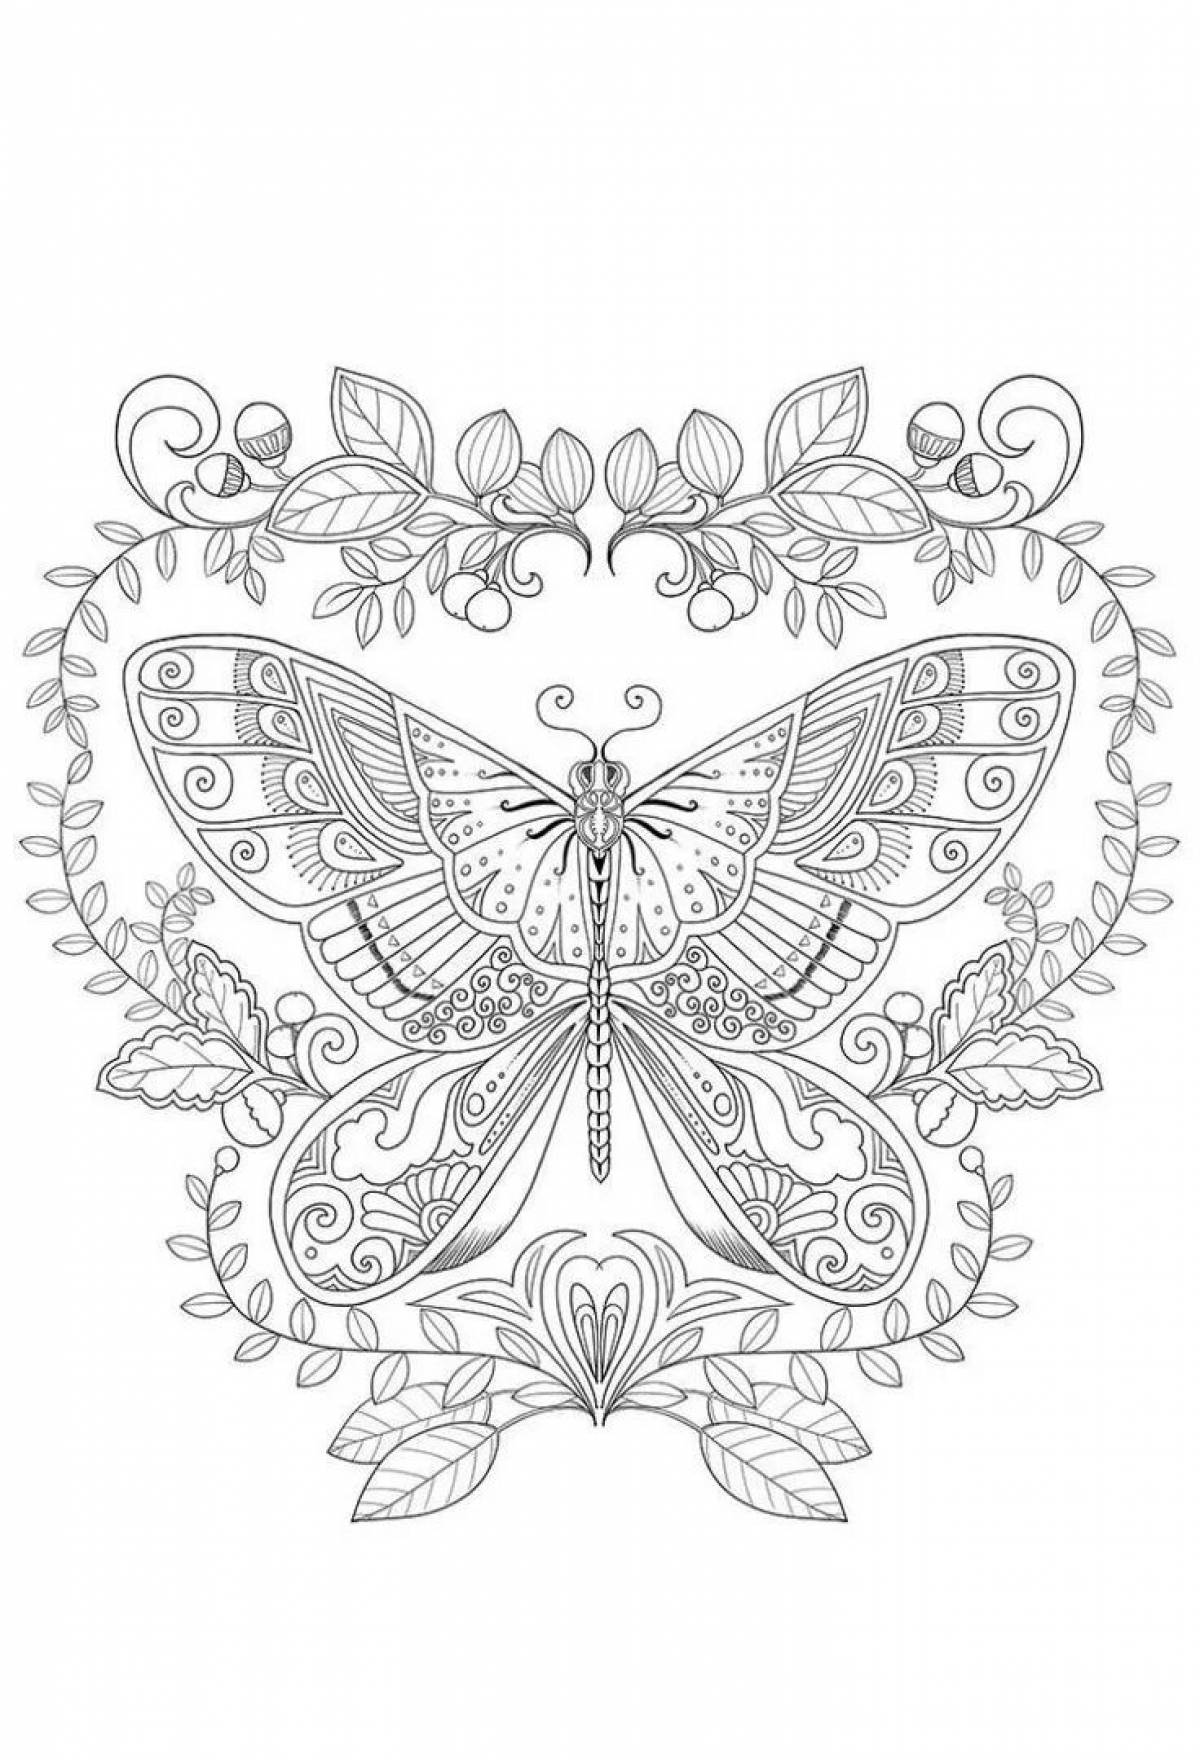 Exalted coloring page комплекс бабочек